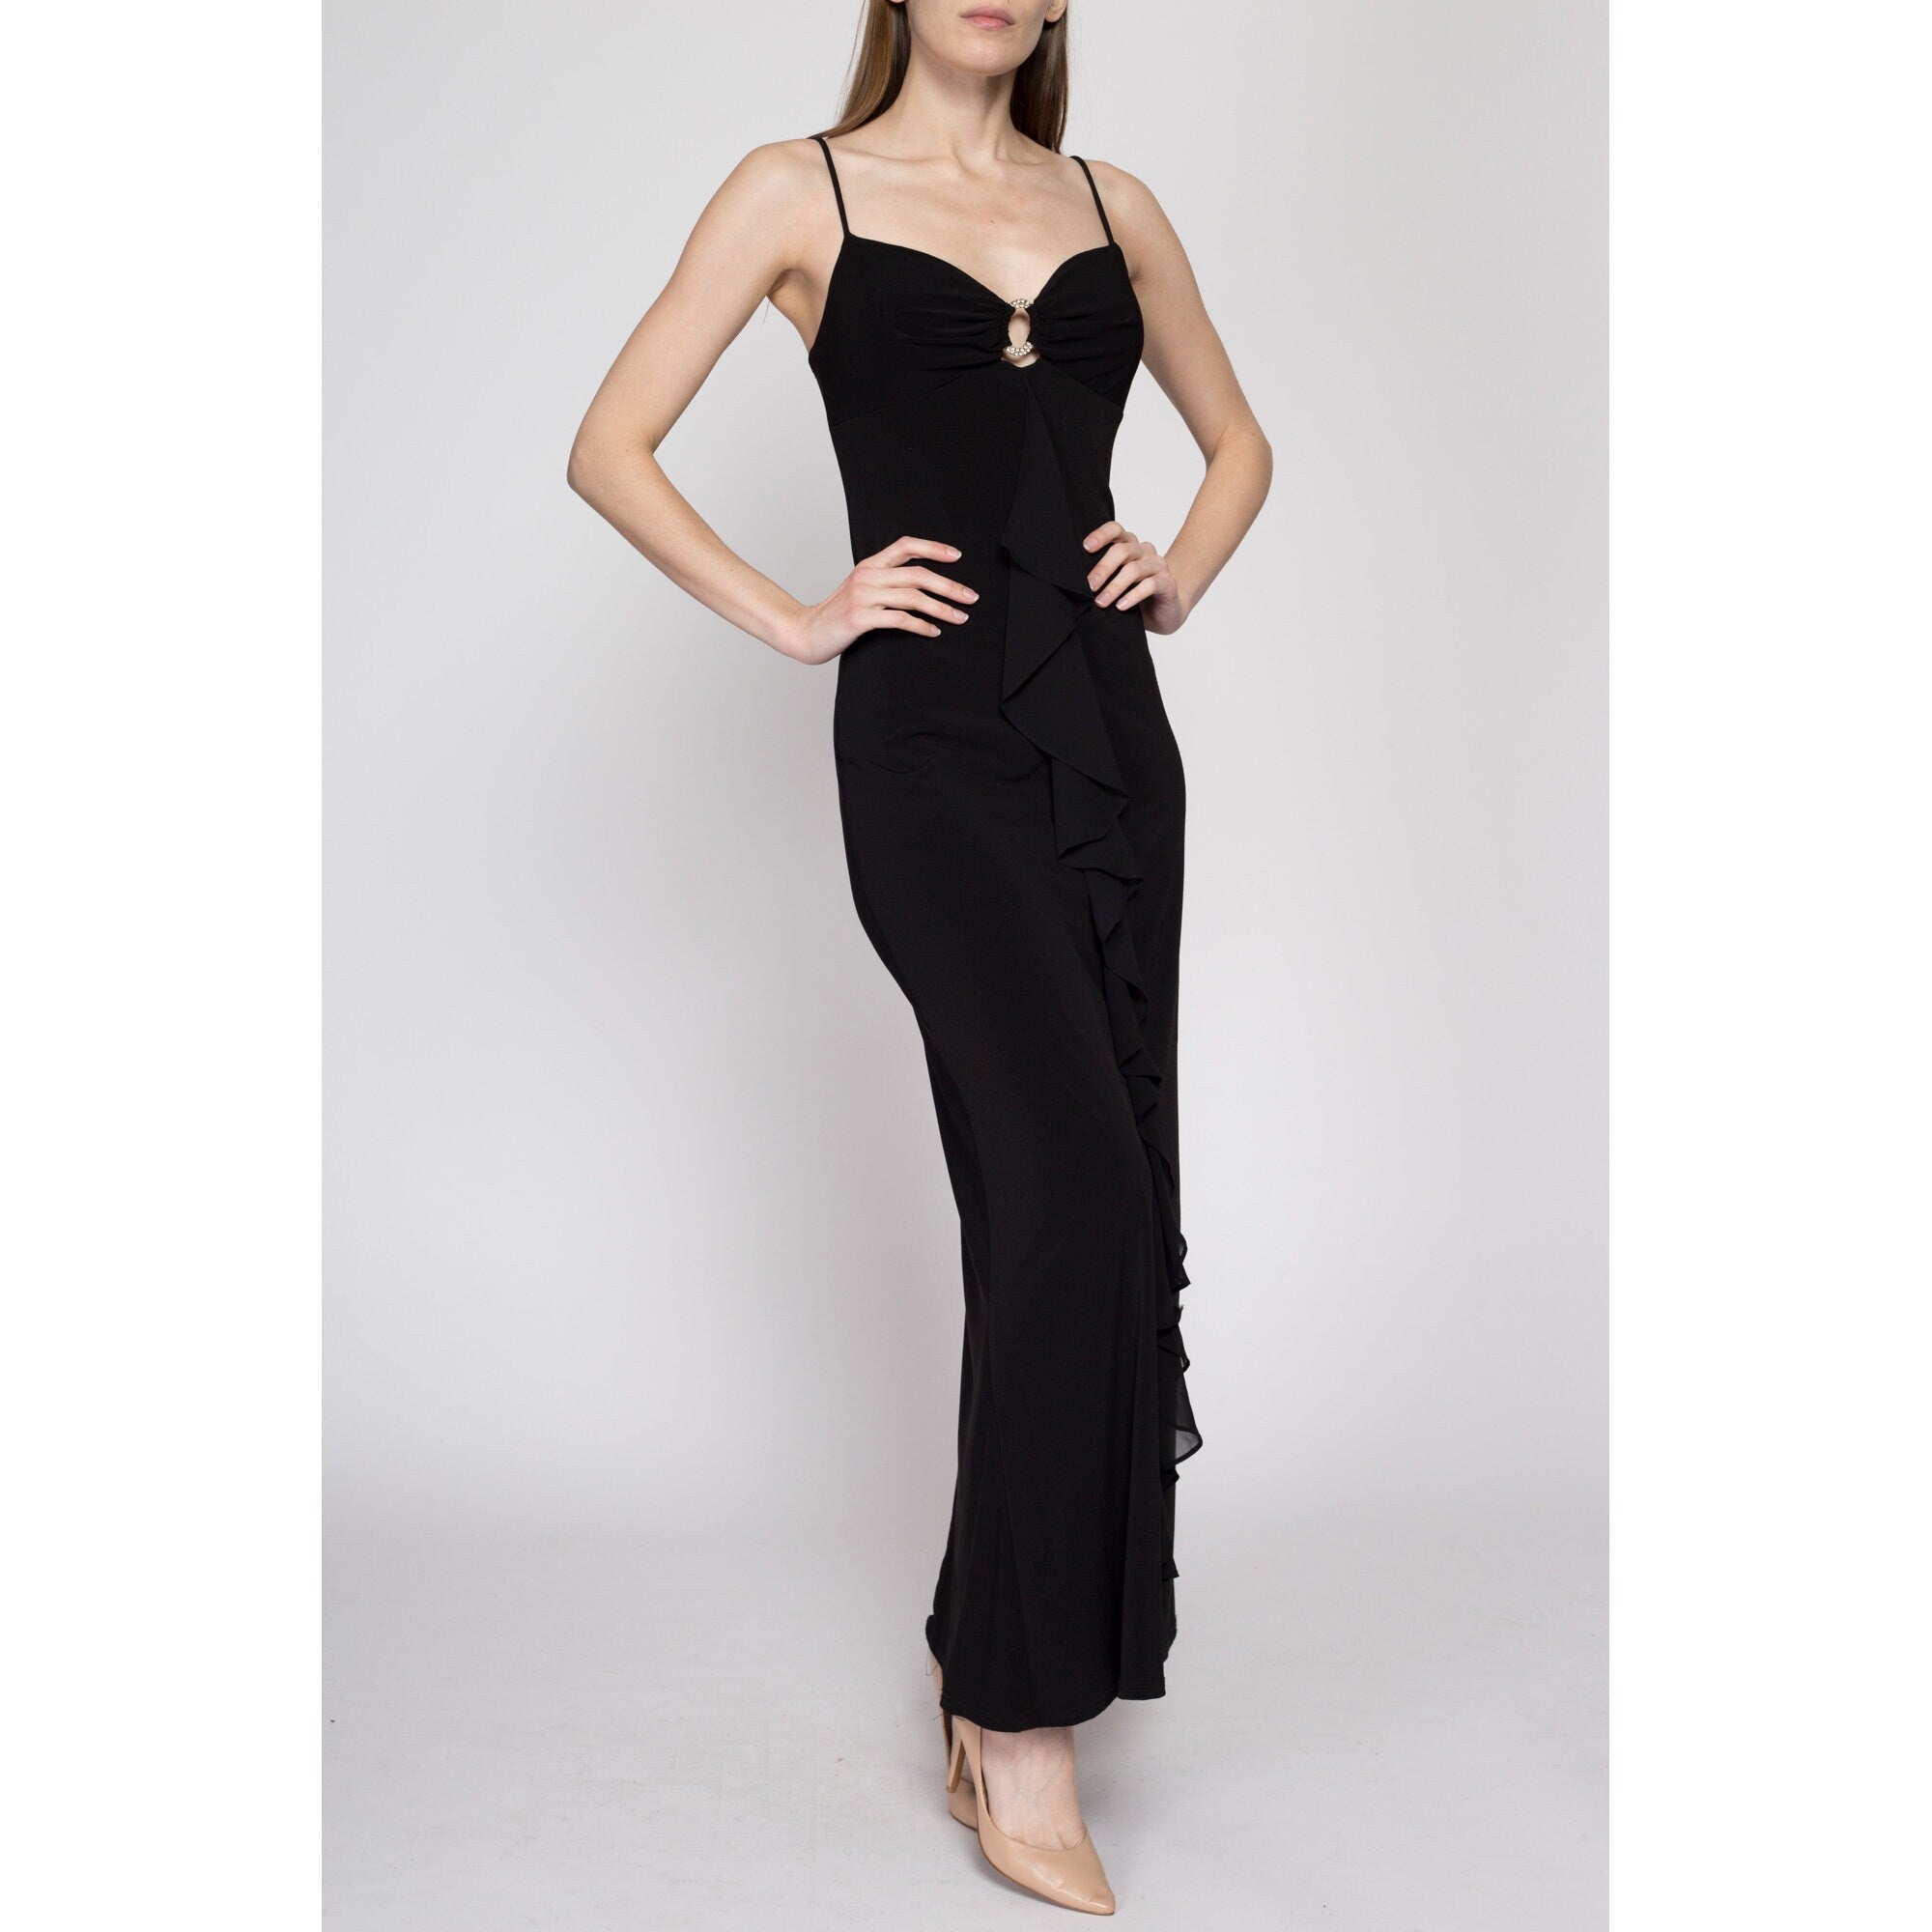 M 90s Formal Dress Medium Floor Length Black Evening … - Gem